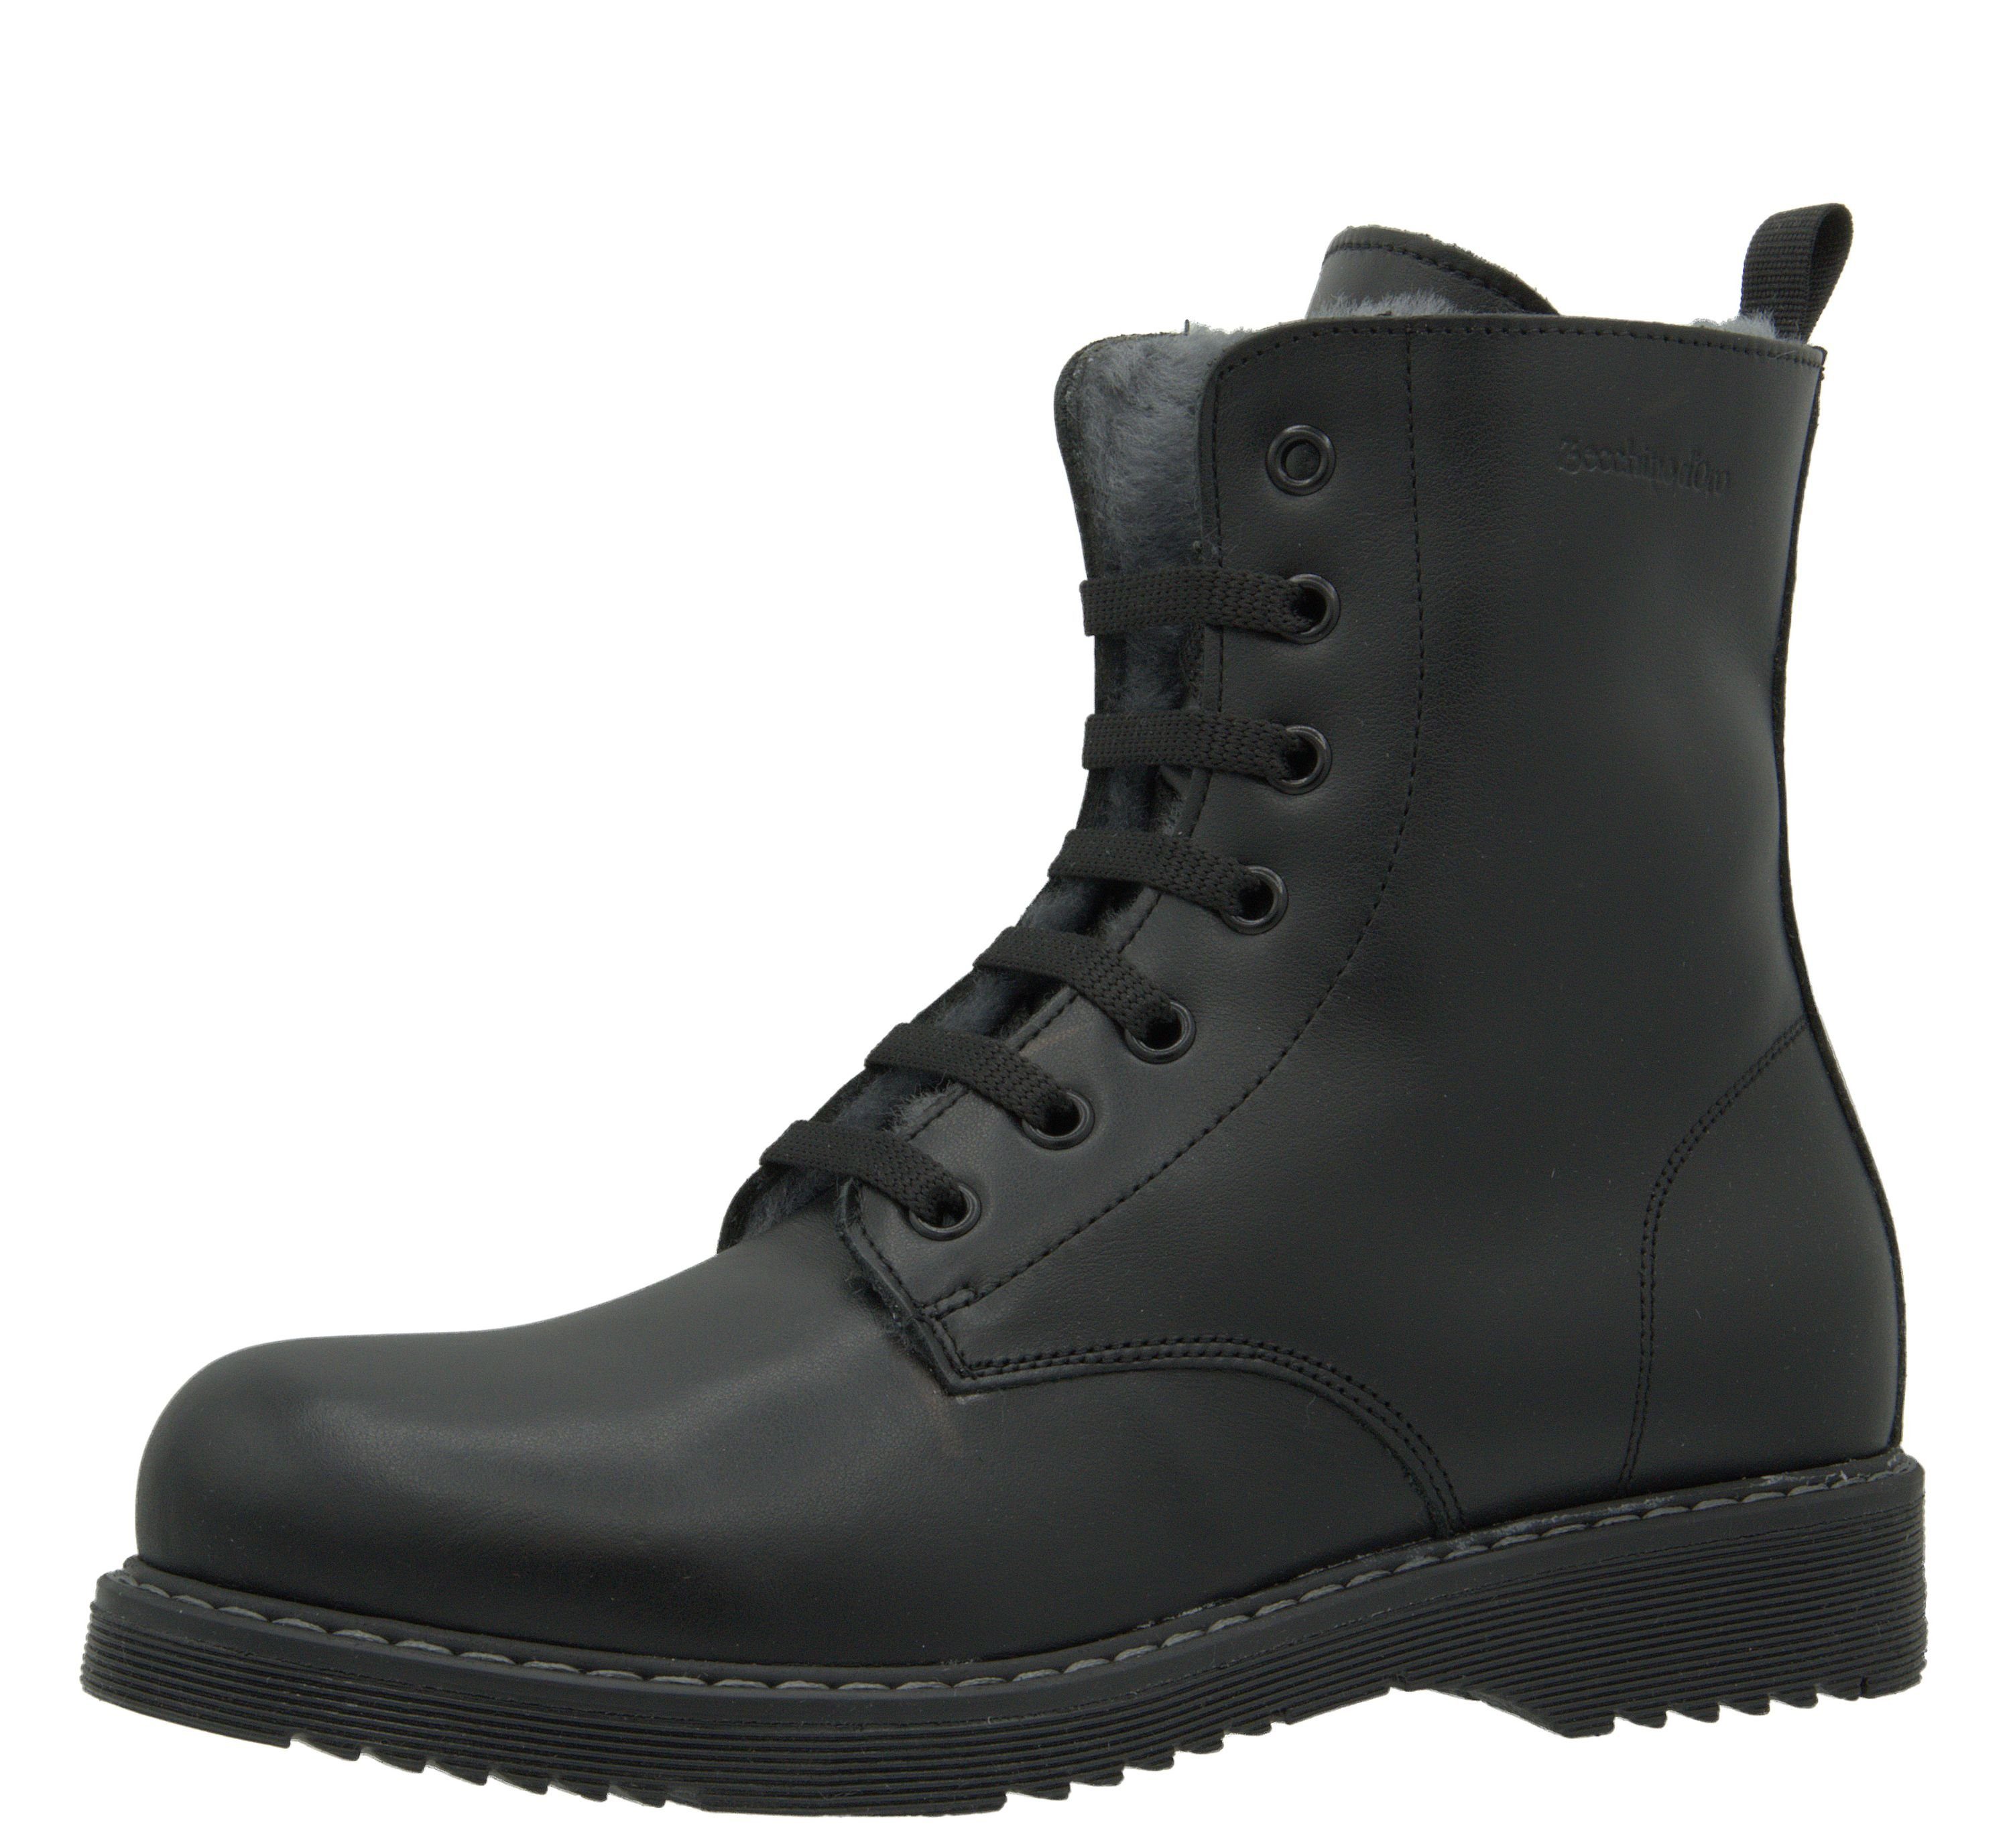 Zecchino d'Oro »Zecchino d'Oro M16 7602 153 Boots Lammfell Stiefelette  schwarz« Schnürstiefelette online kaufen | OTTO